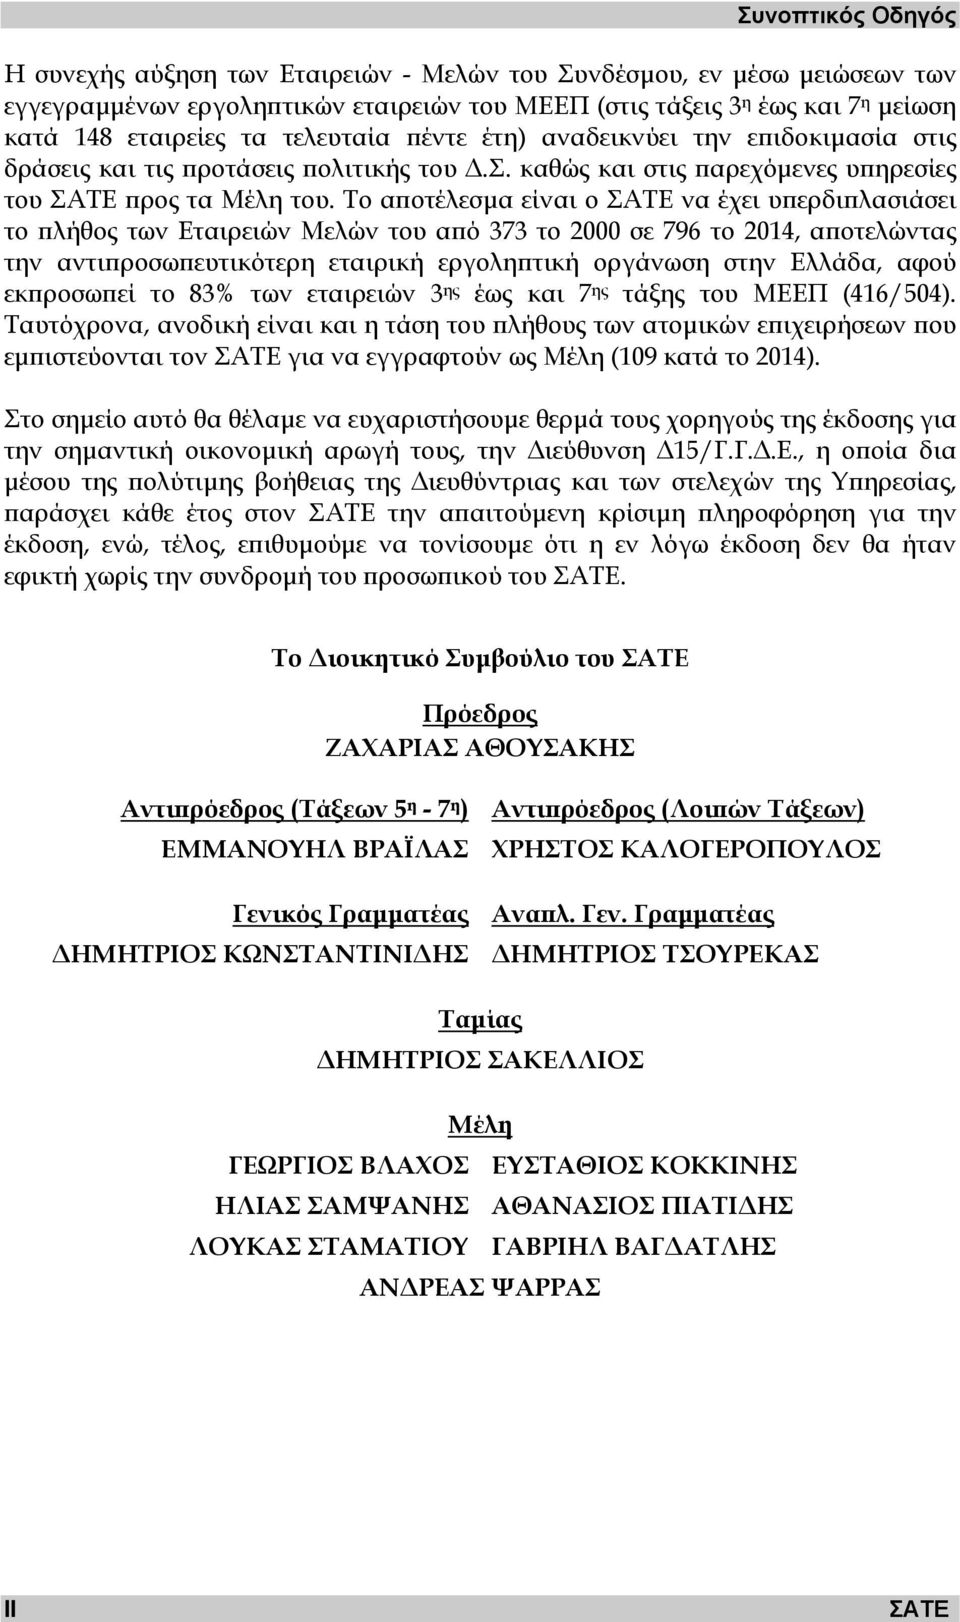 Το αποτέλεσµα είναι ο ΣΑΤΕ να έχει υπερδιπλασιάσει το πλήθος των Εταιρειών Μελών του από 373 το 2000 σε 796 το 2014, αποτελώντας την αντιπροσωπευτικότερη εταιρική εργοληπτική οργάνωση στην Ελλάδα,